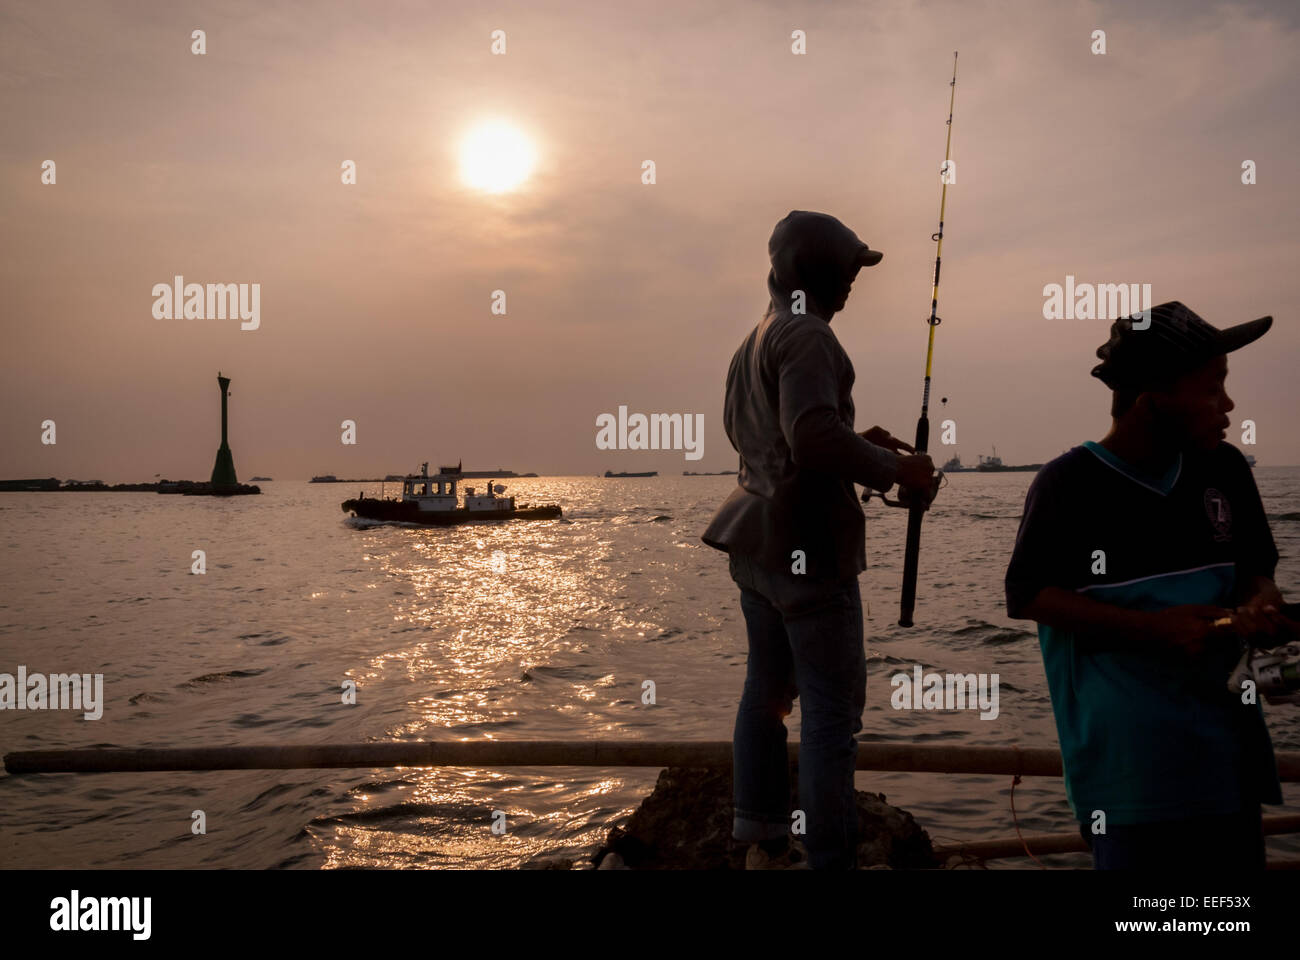 Les habitants de la région pêchent sur le littoral du bassin du port de Jakarta. Banque D'Images